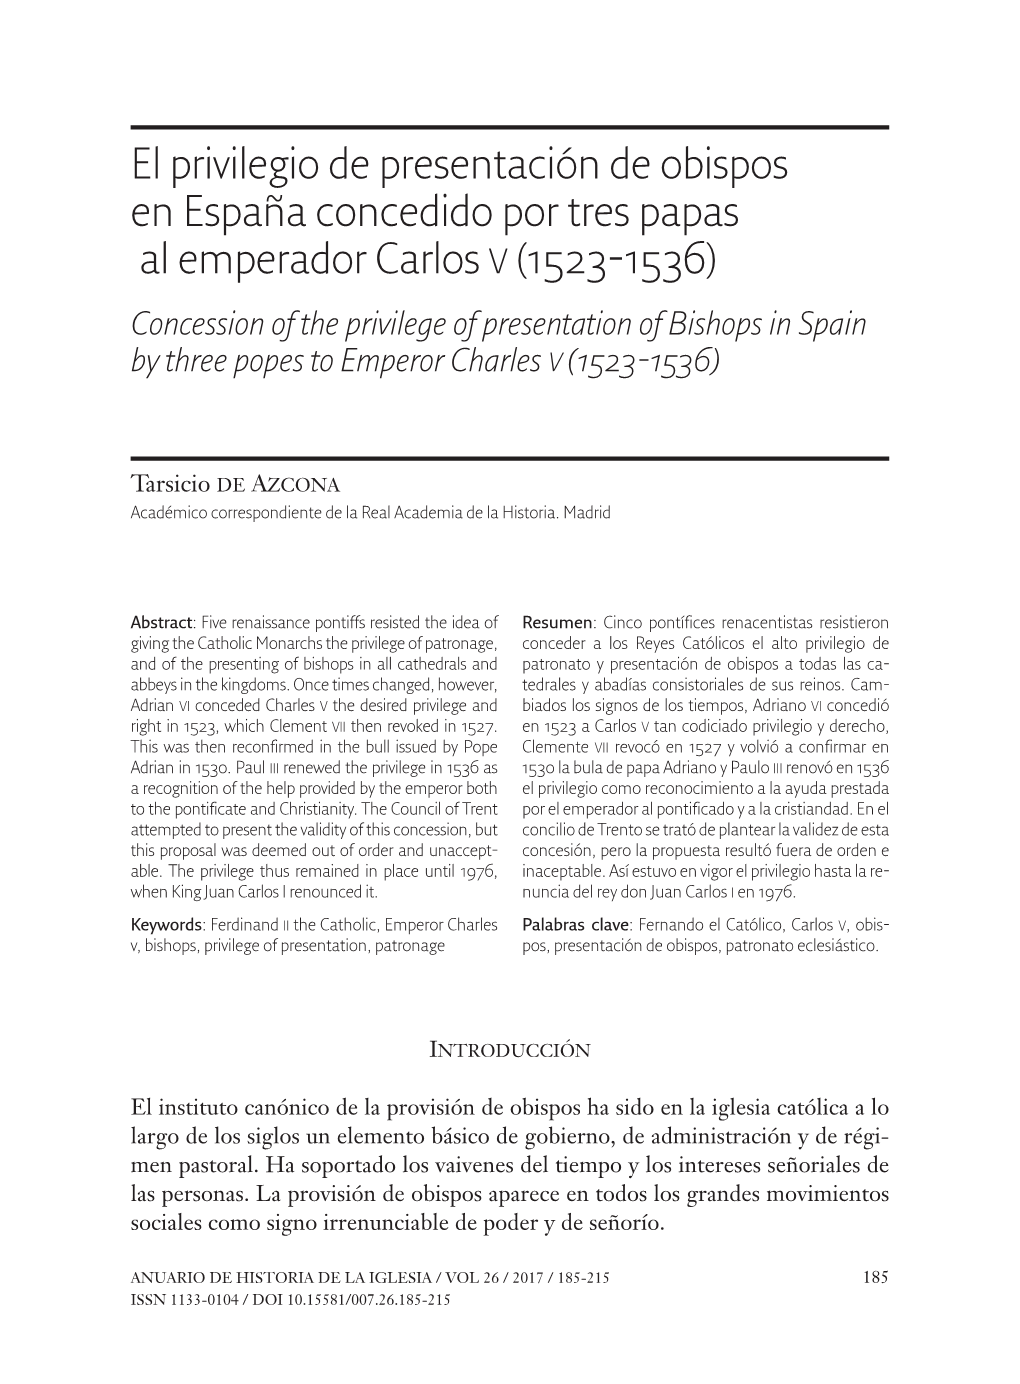 El Privilegio De Presentación De Obispos En España Concedido Por